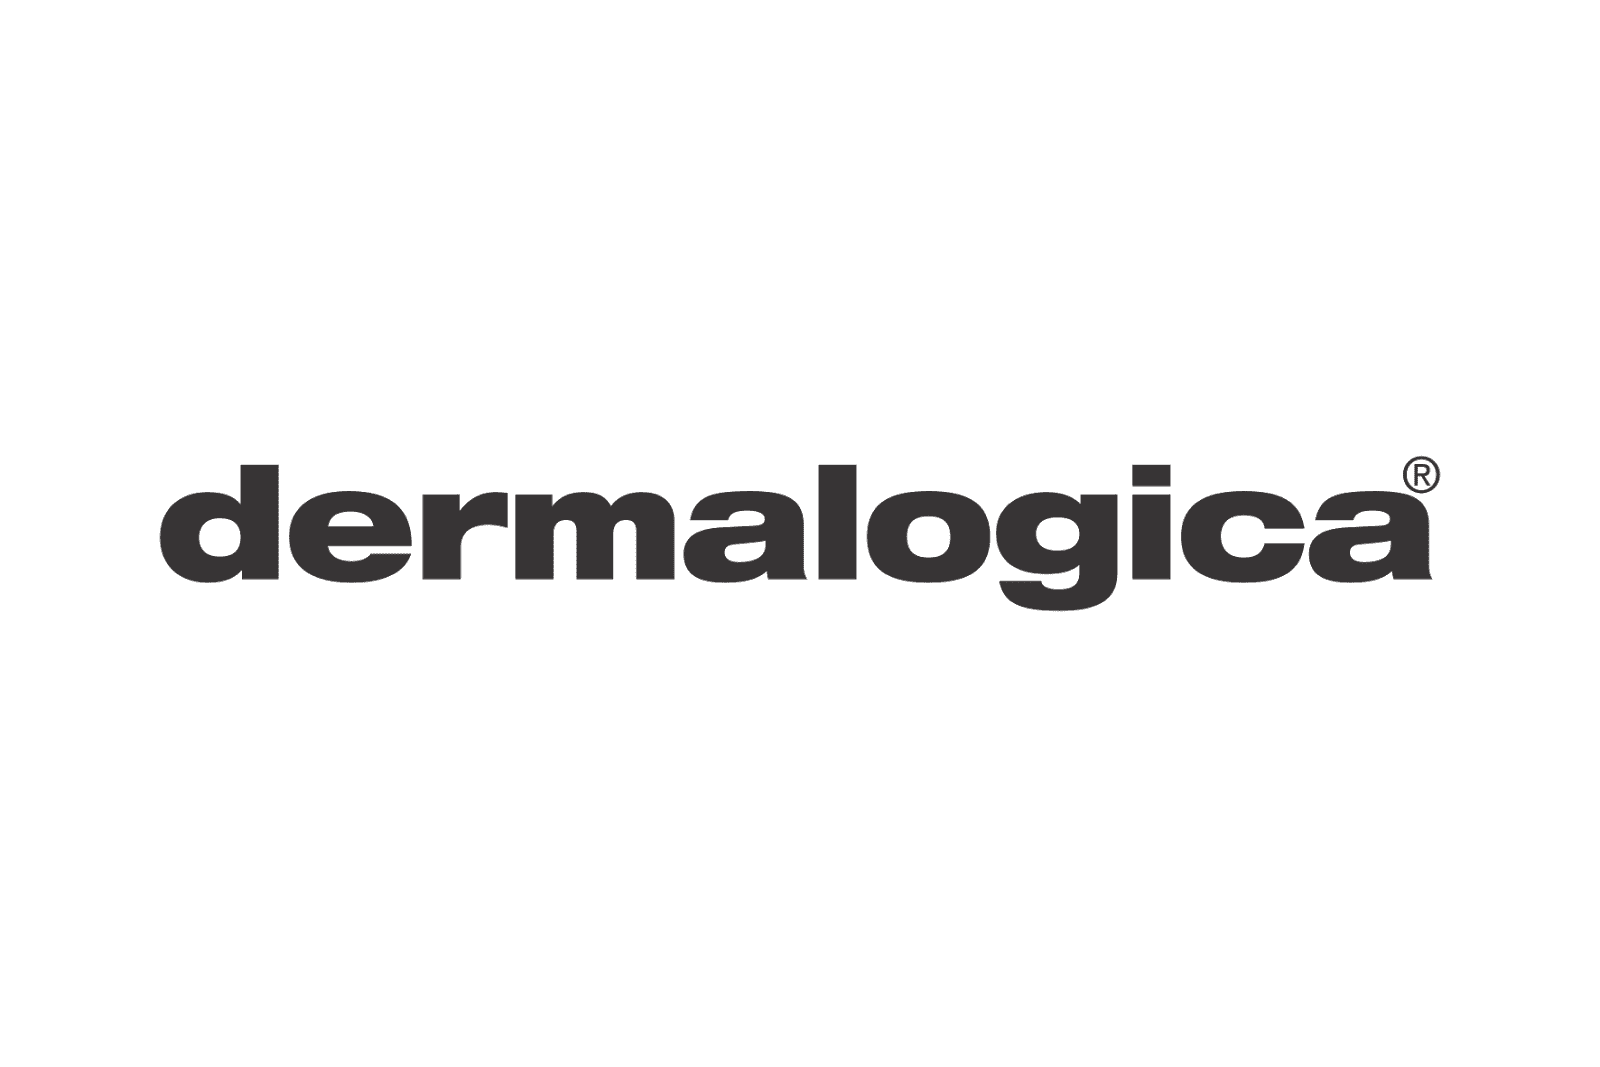 Dermalogica-logo.png